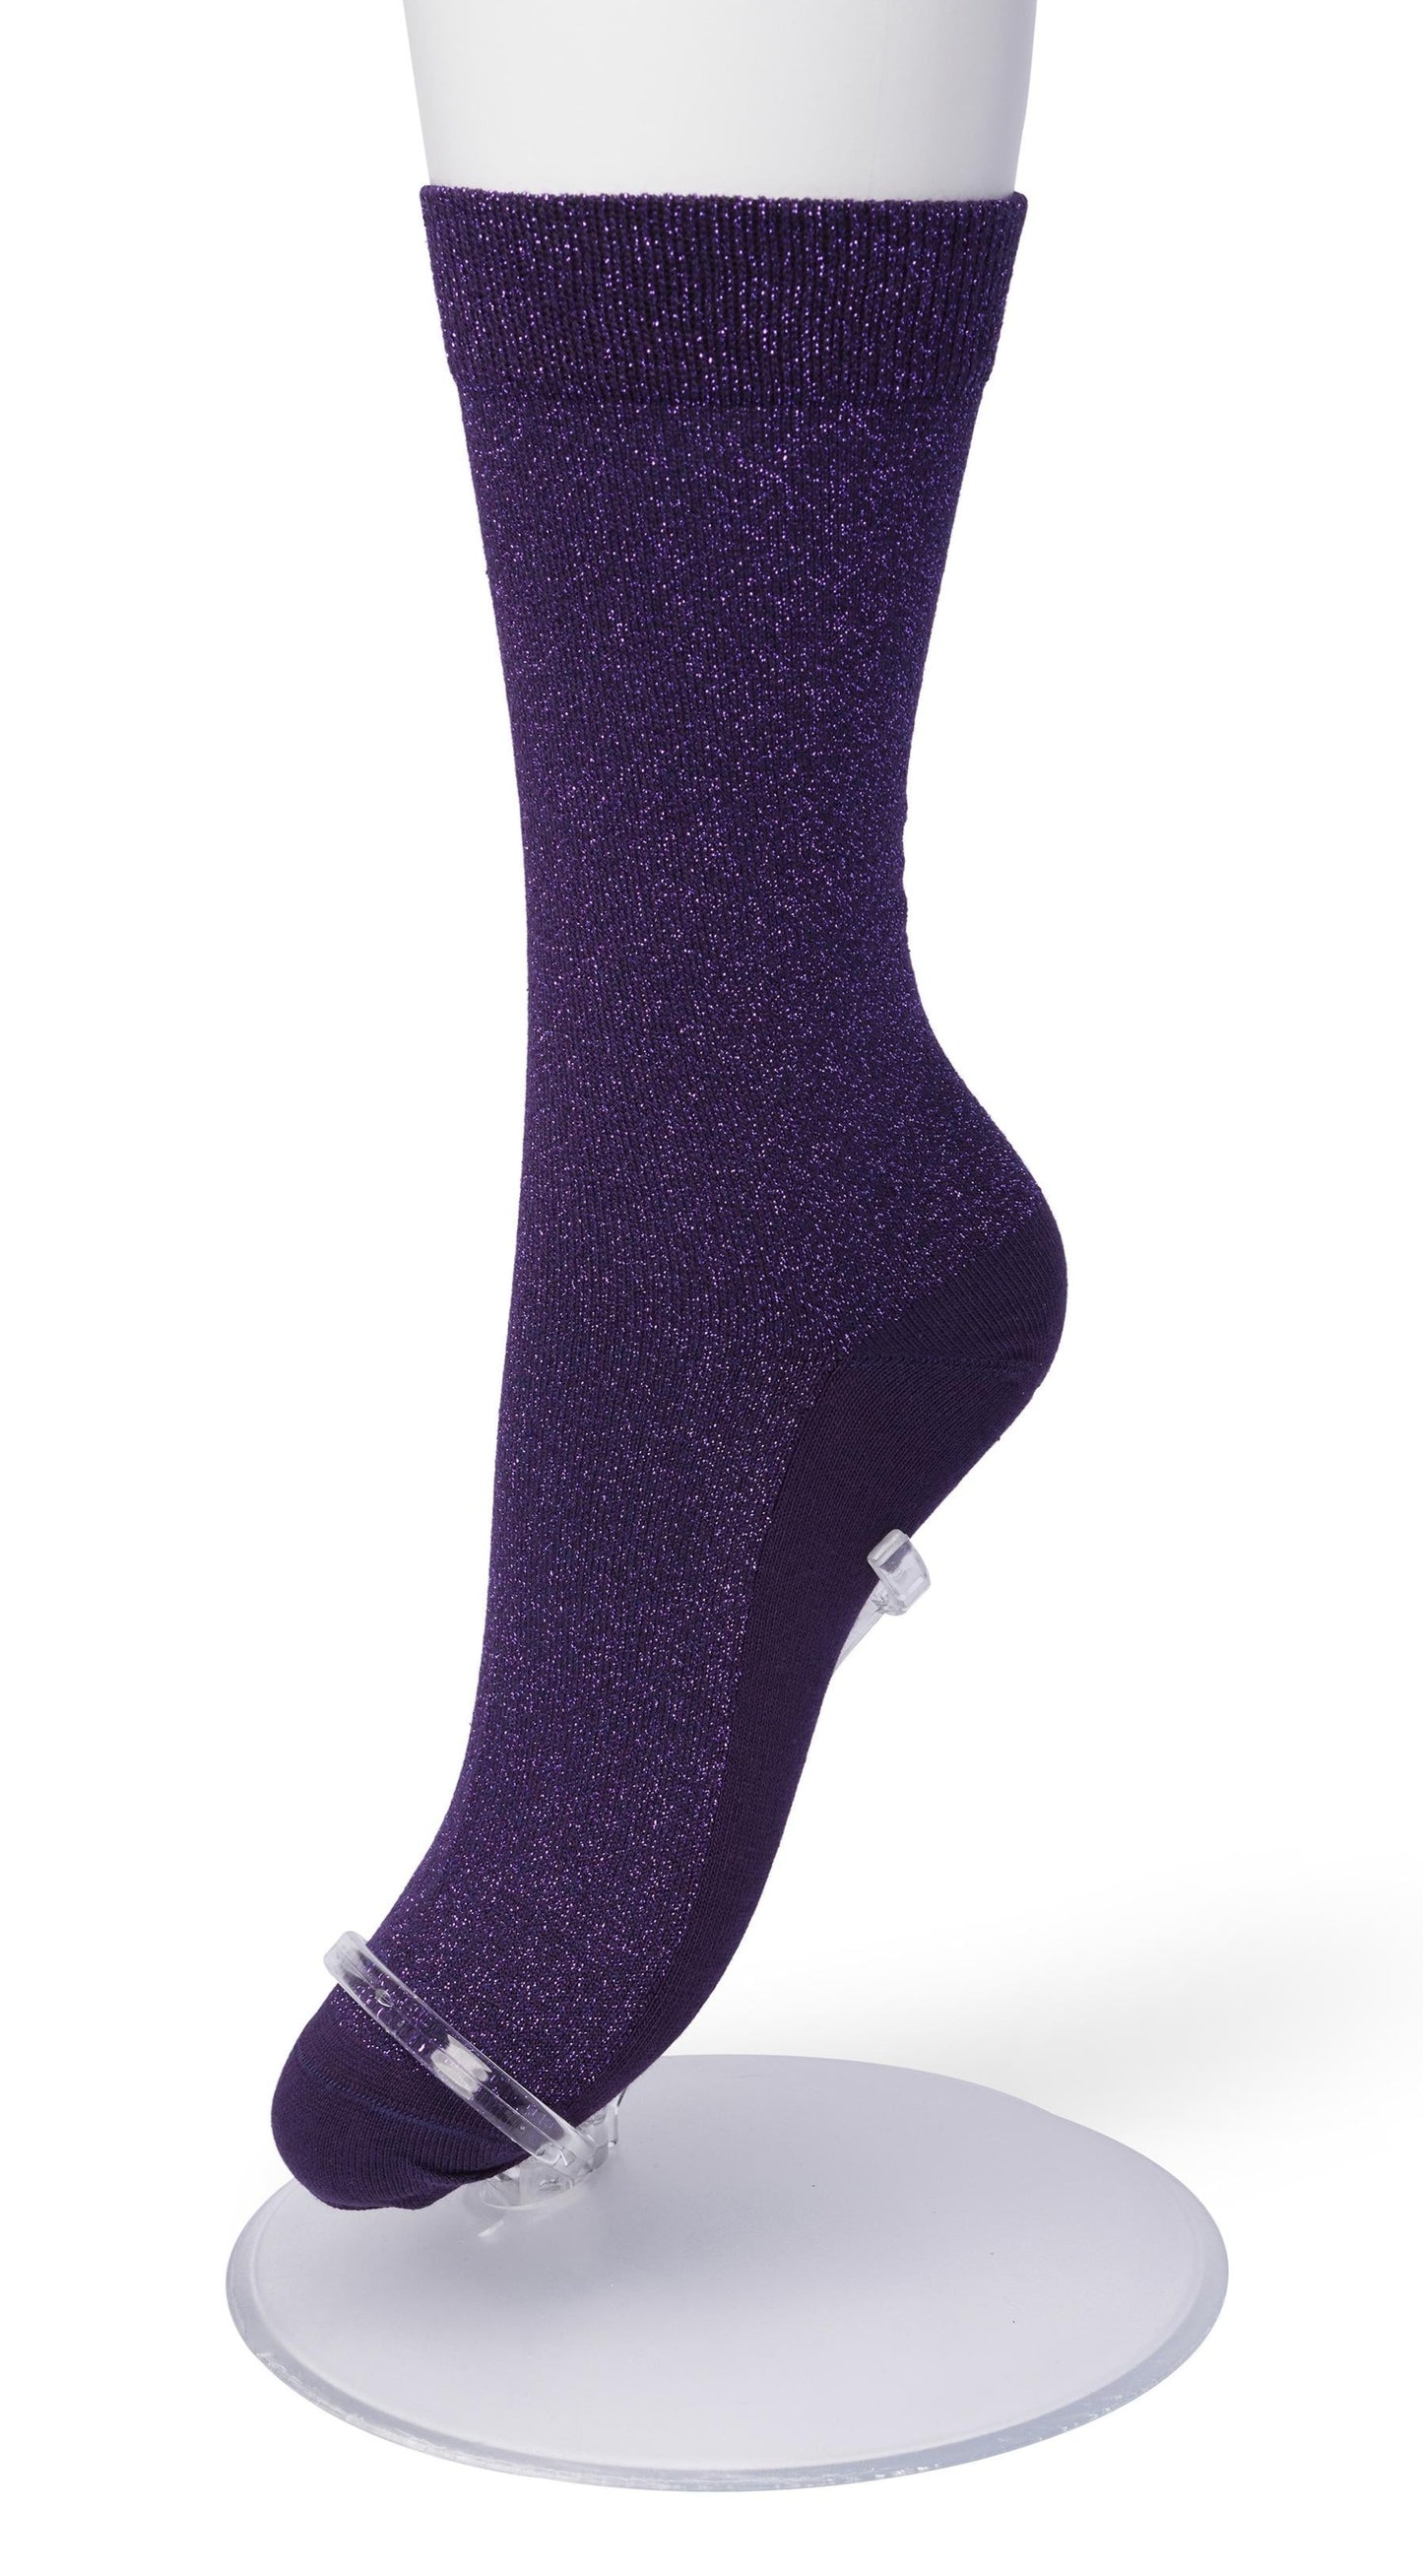 Bonnie Doon BP051138 Cotton Sparkle Socks - Dark Purple (Velvet) socks with sparkly glitter lam̩ lurex